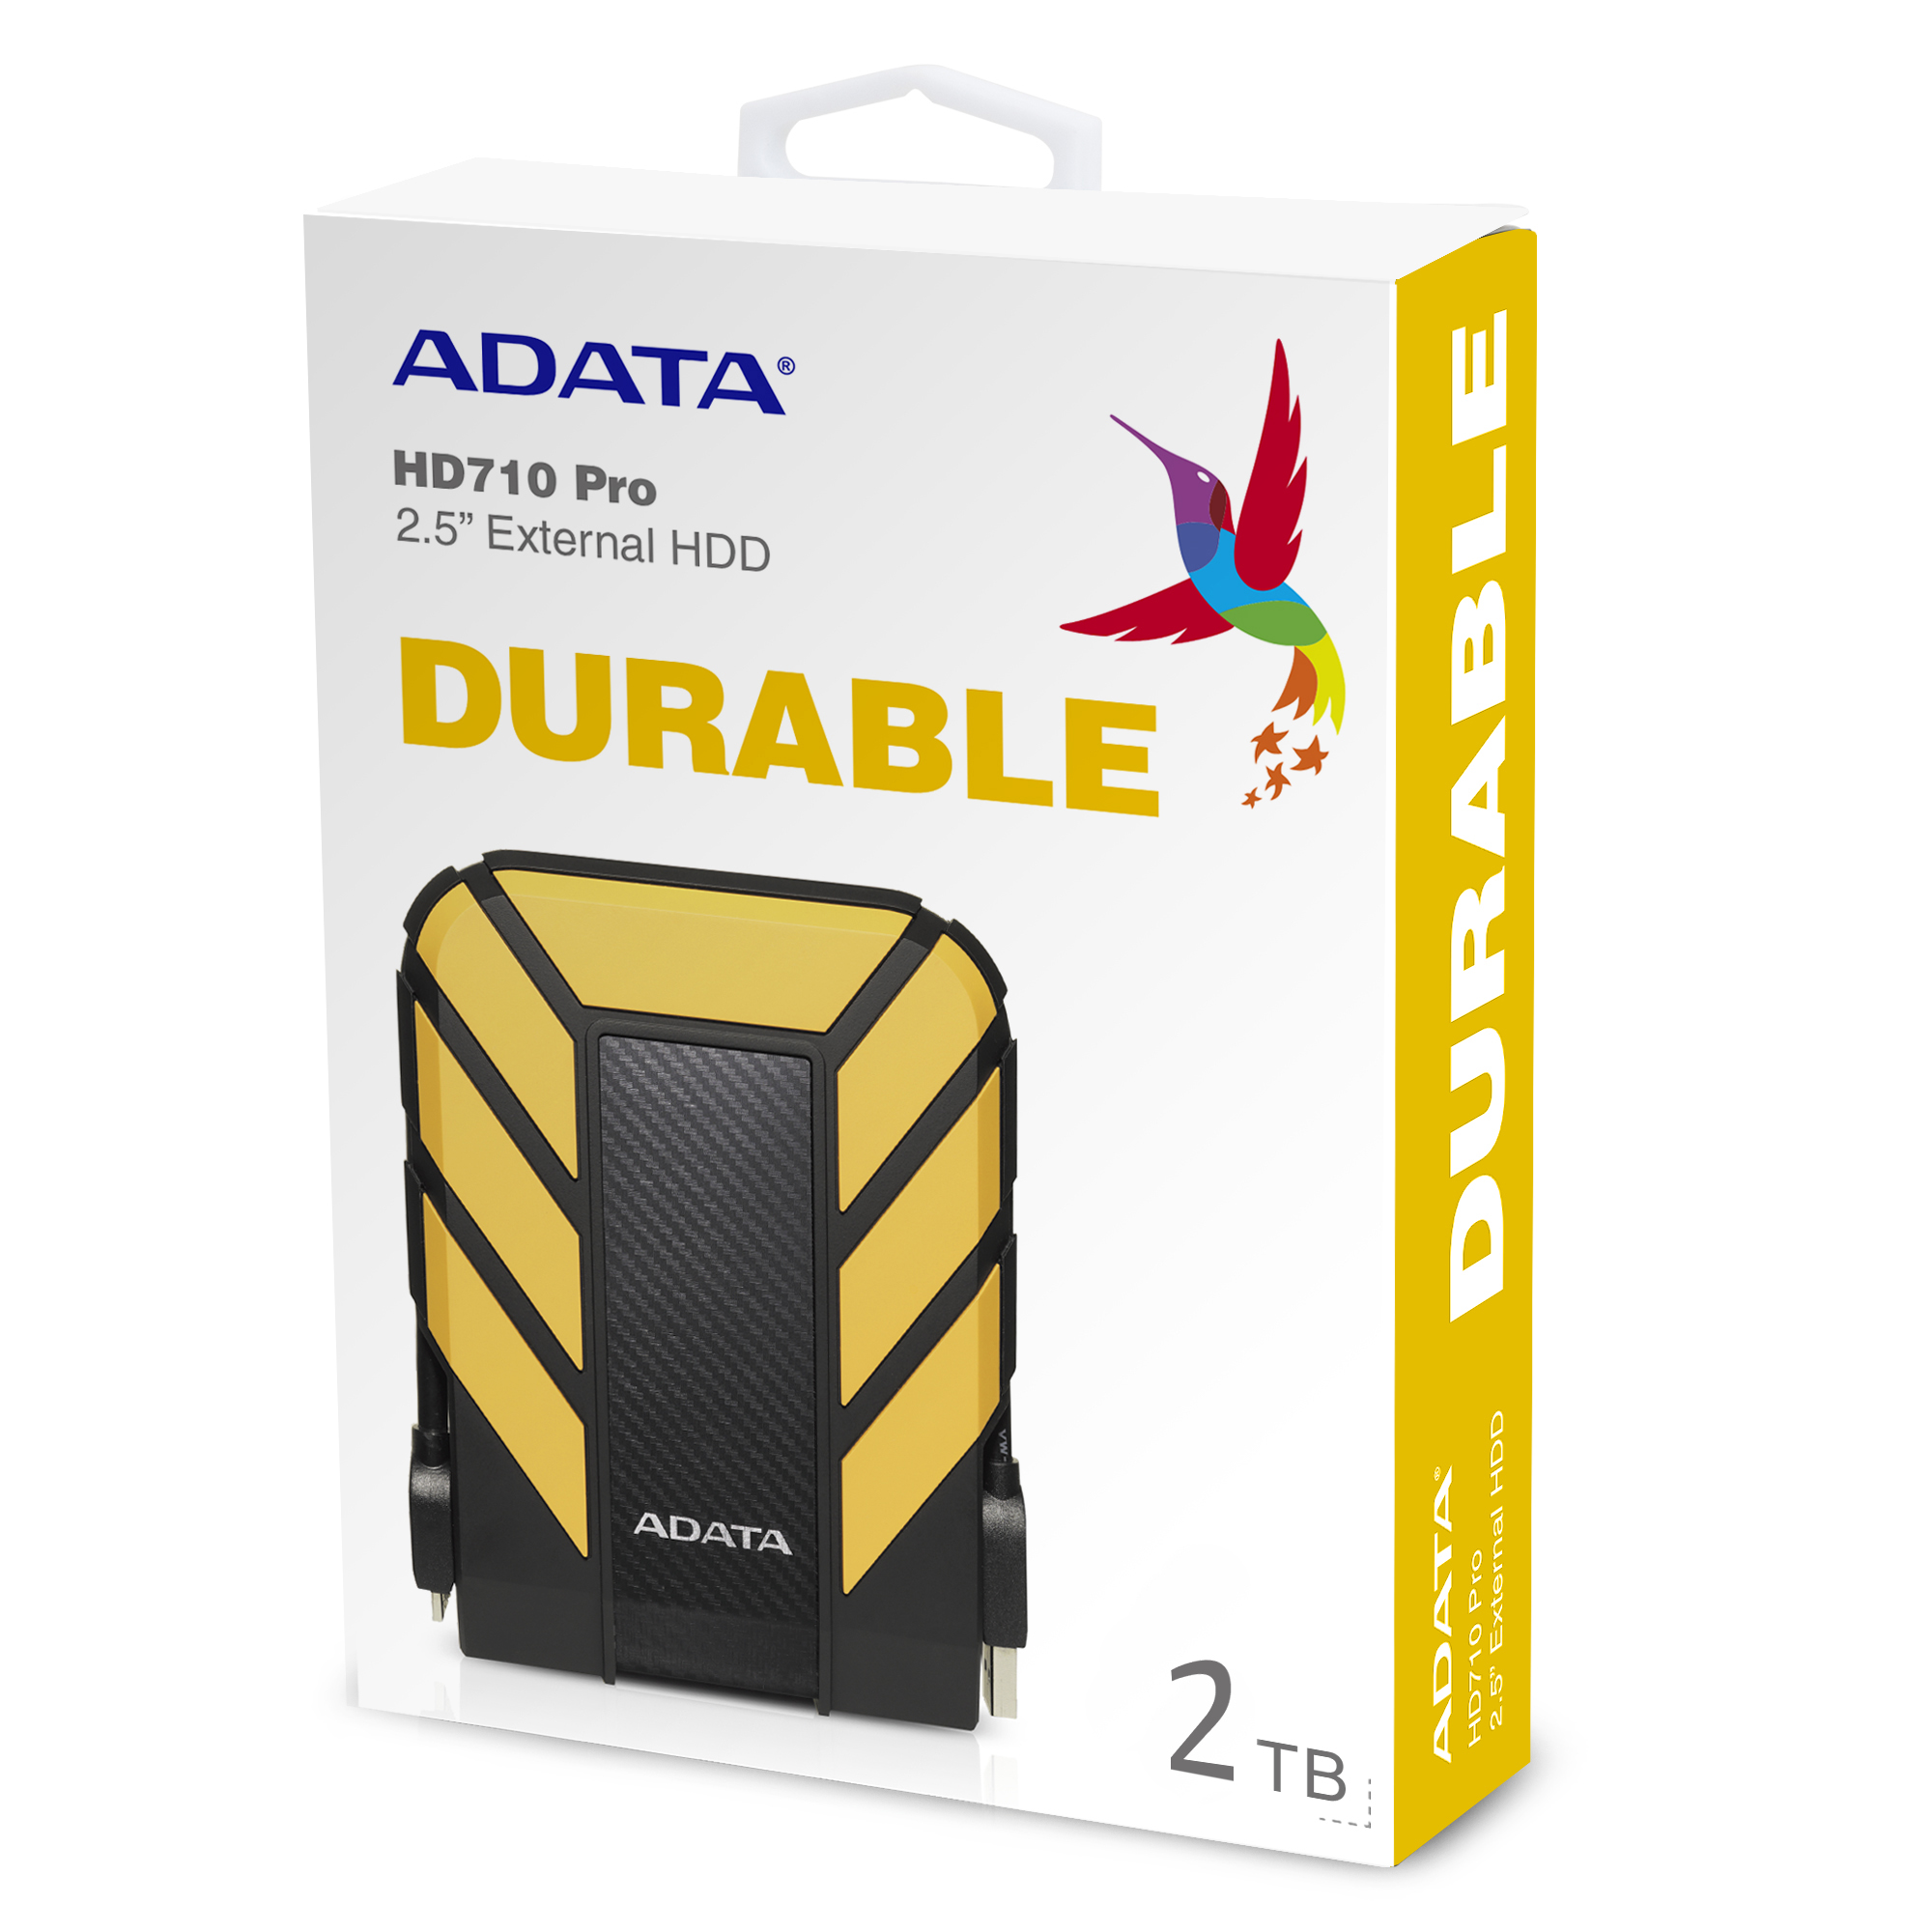 هارد اکسترنال HD710 Pro ایدیتا 2 ترابایت مدل Adata HD710 Pro Durable